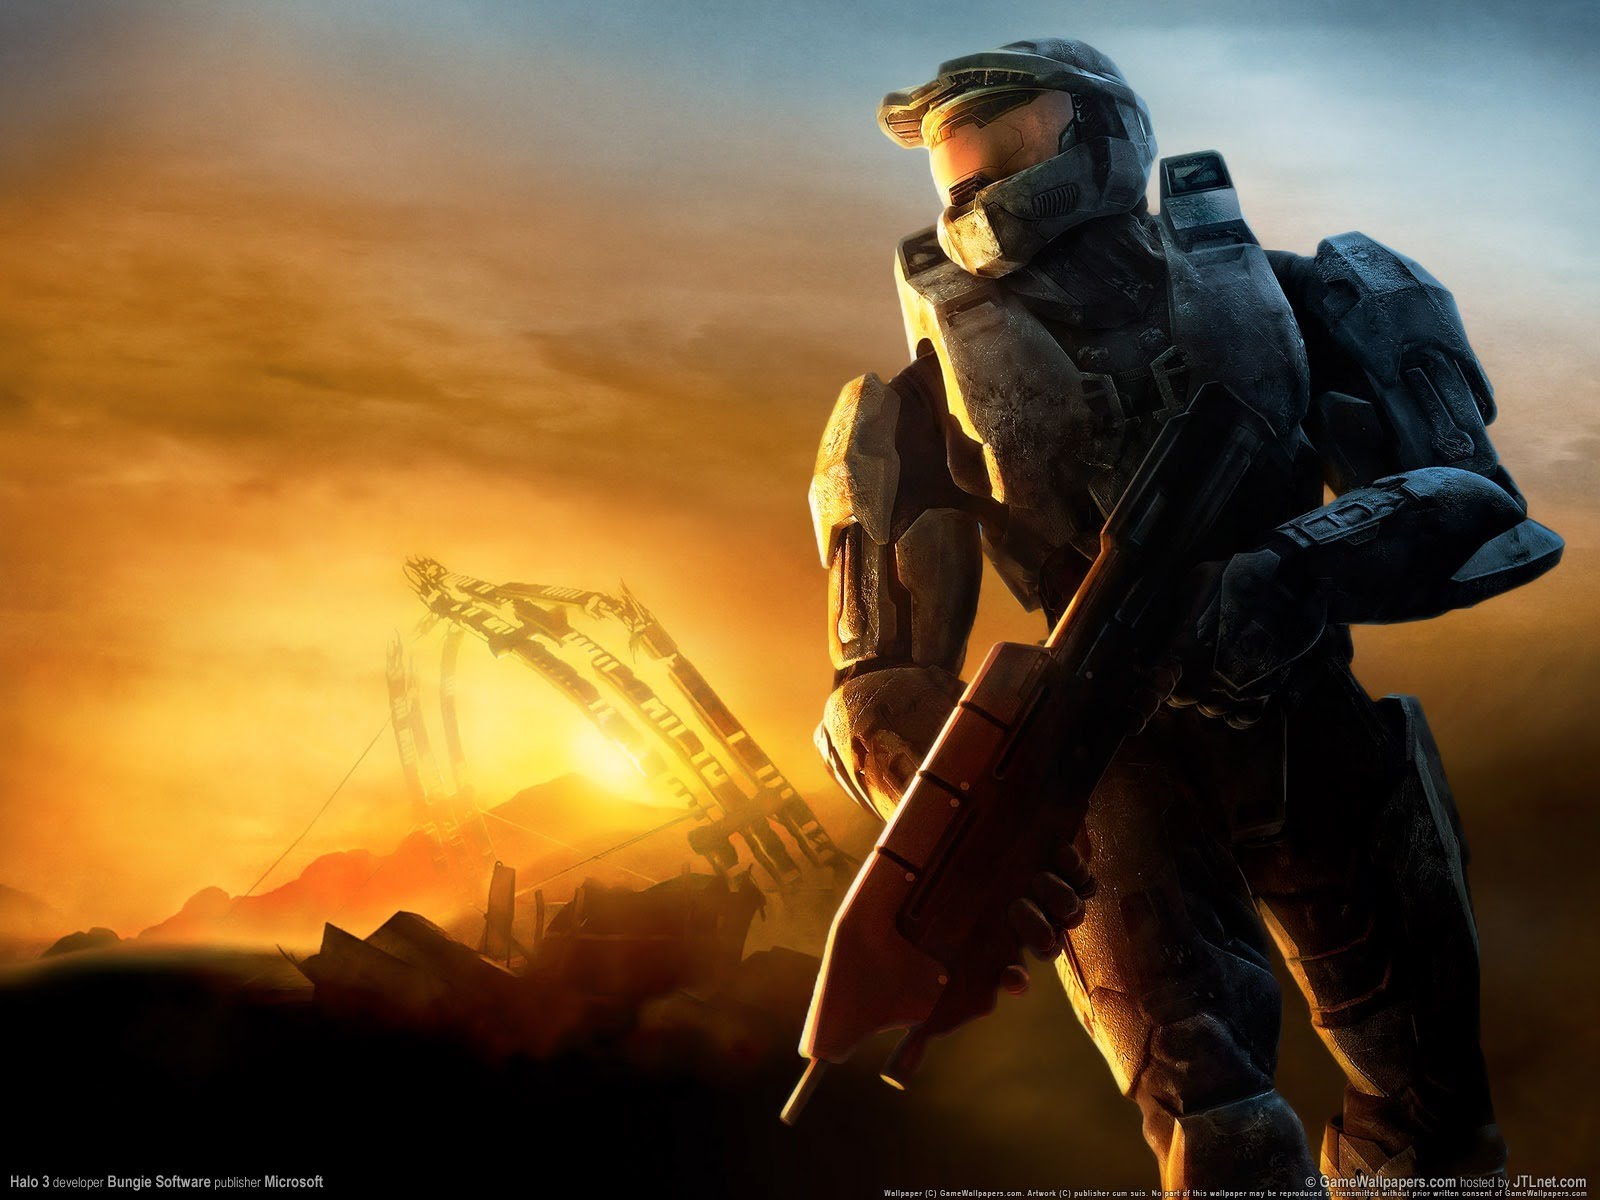 Xbox 360 emülatörü Xenia, 30 FPS ile Halo 3 çalıştırabiliyor